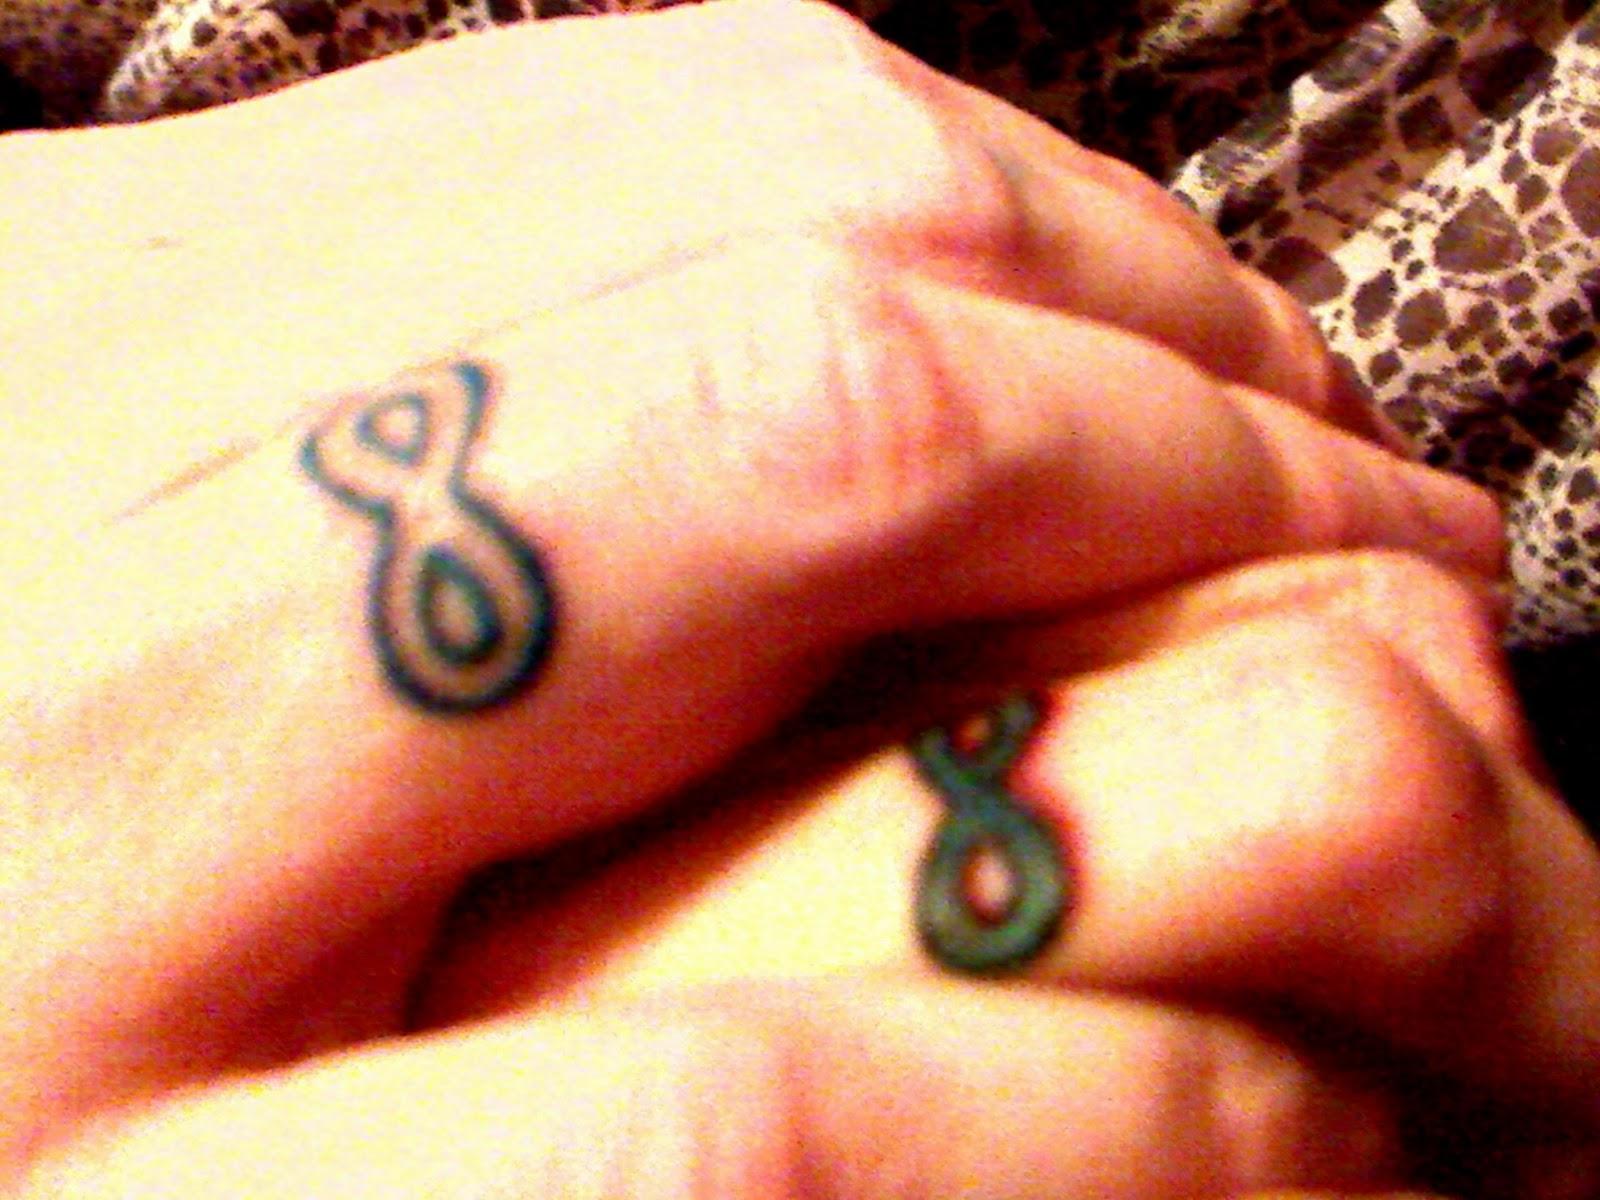 celtic wedding ring tattoos